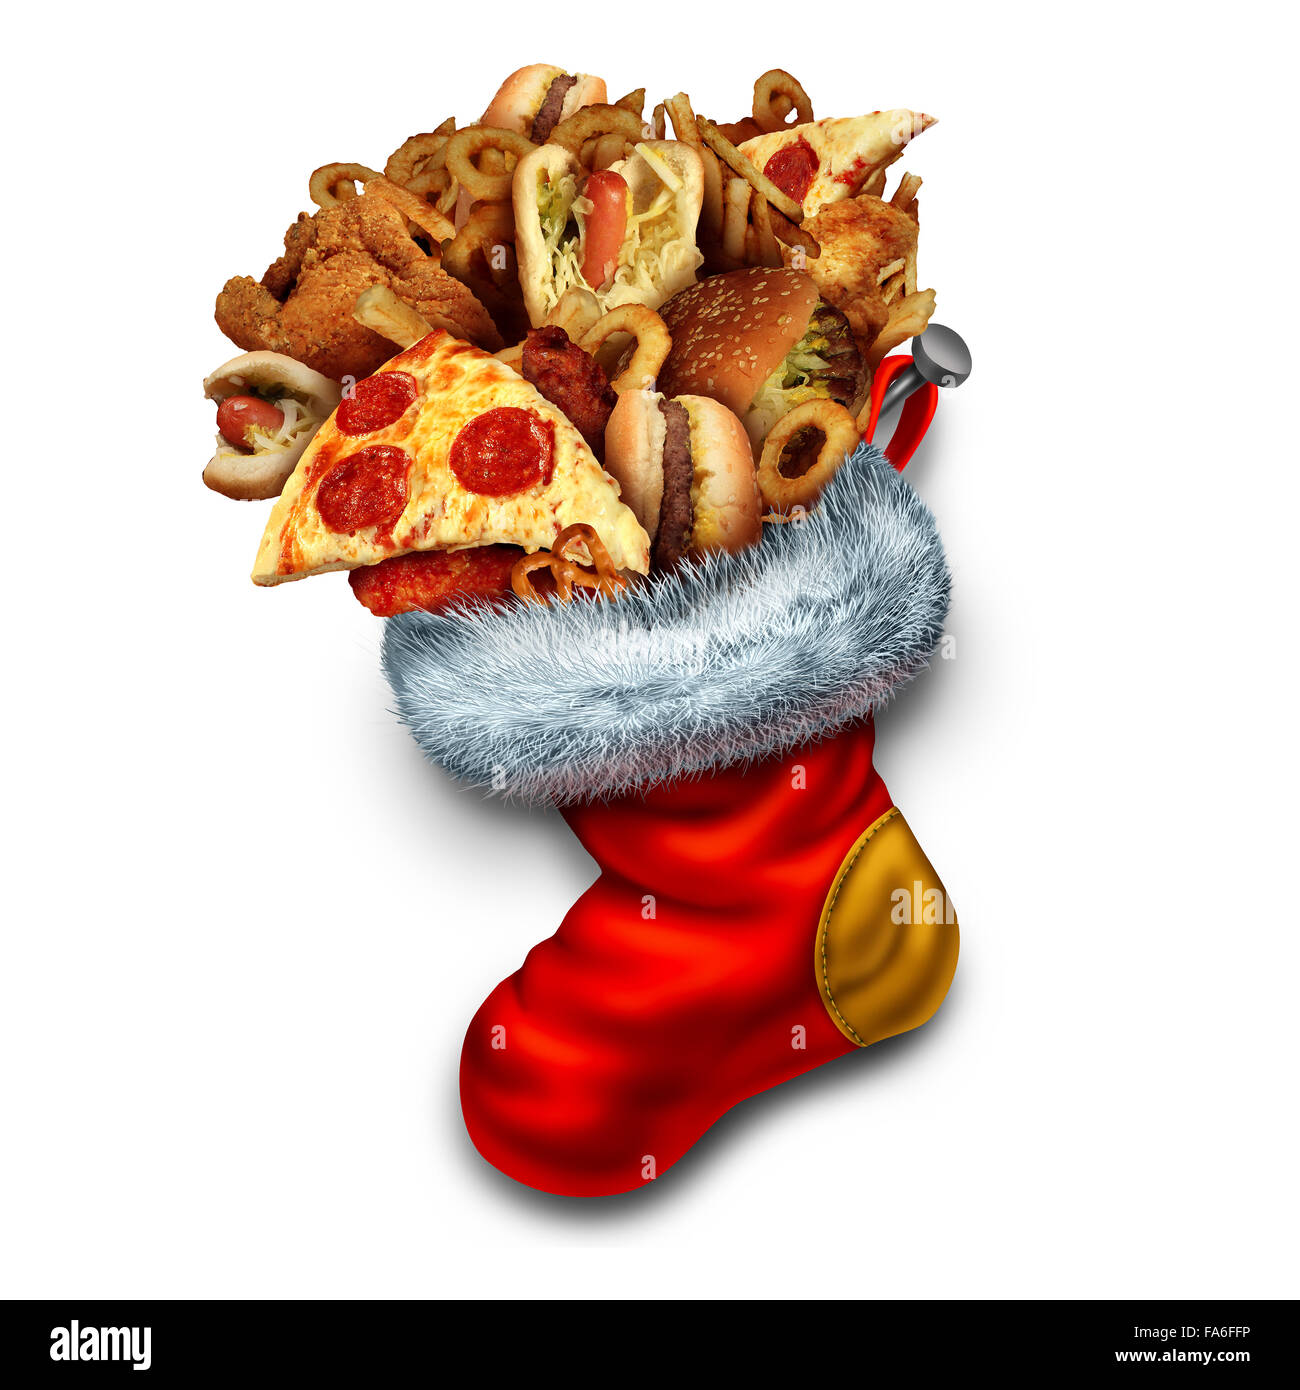 Vacanza malsano mangiare come simbolo di un gruppo nel grasso di fast food come hamburger hotdog e il pollo fritto farcito in un rosso calza di Natale come un icona di obesità e surriscaldamenti durante le vacanze invernali. Foto Stock